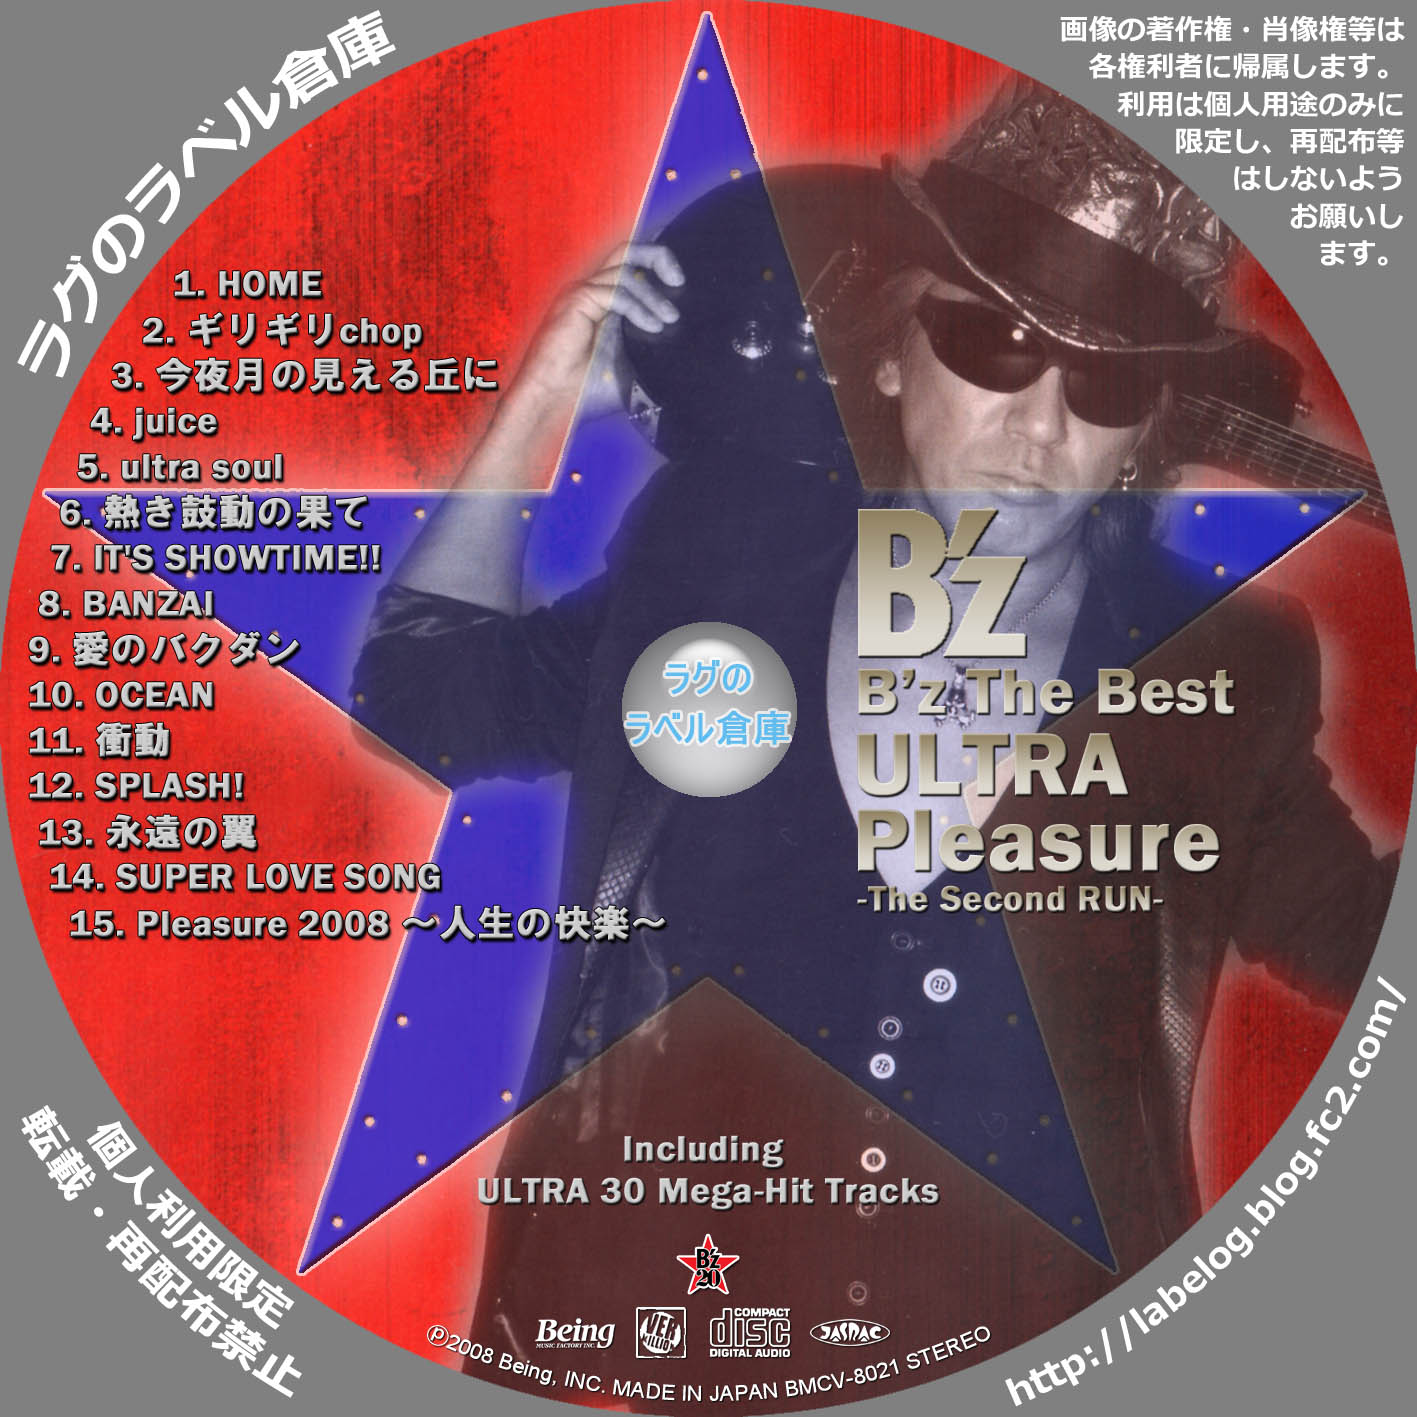 カテゴリー :ULTRA Pleasure ラグの CD / DVD / BD 自作ラベル倉庫